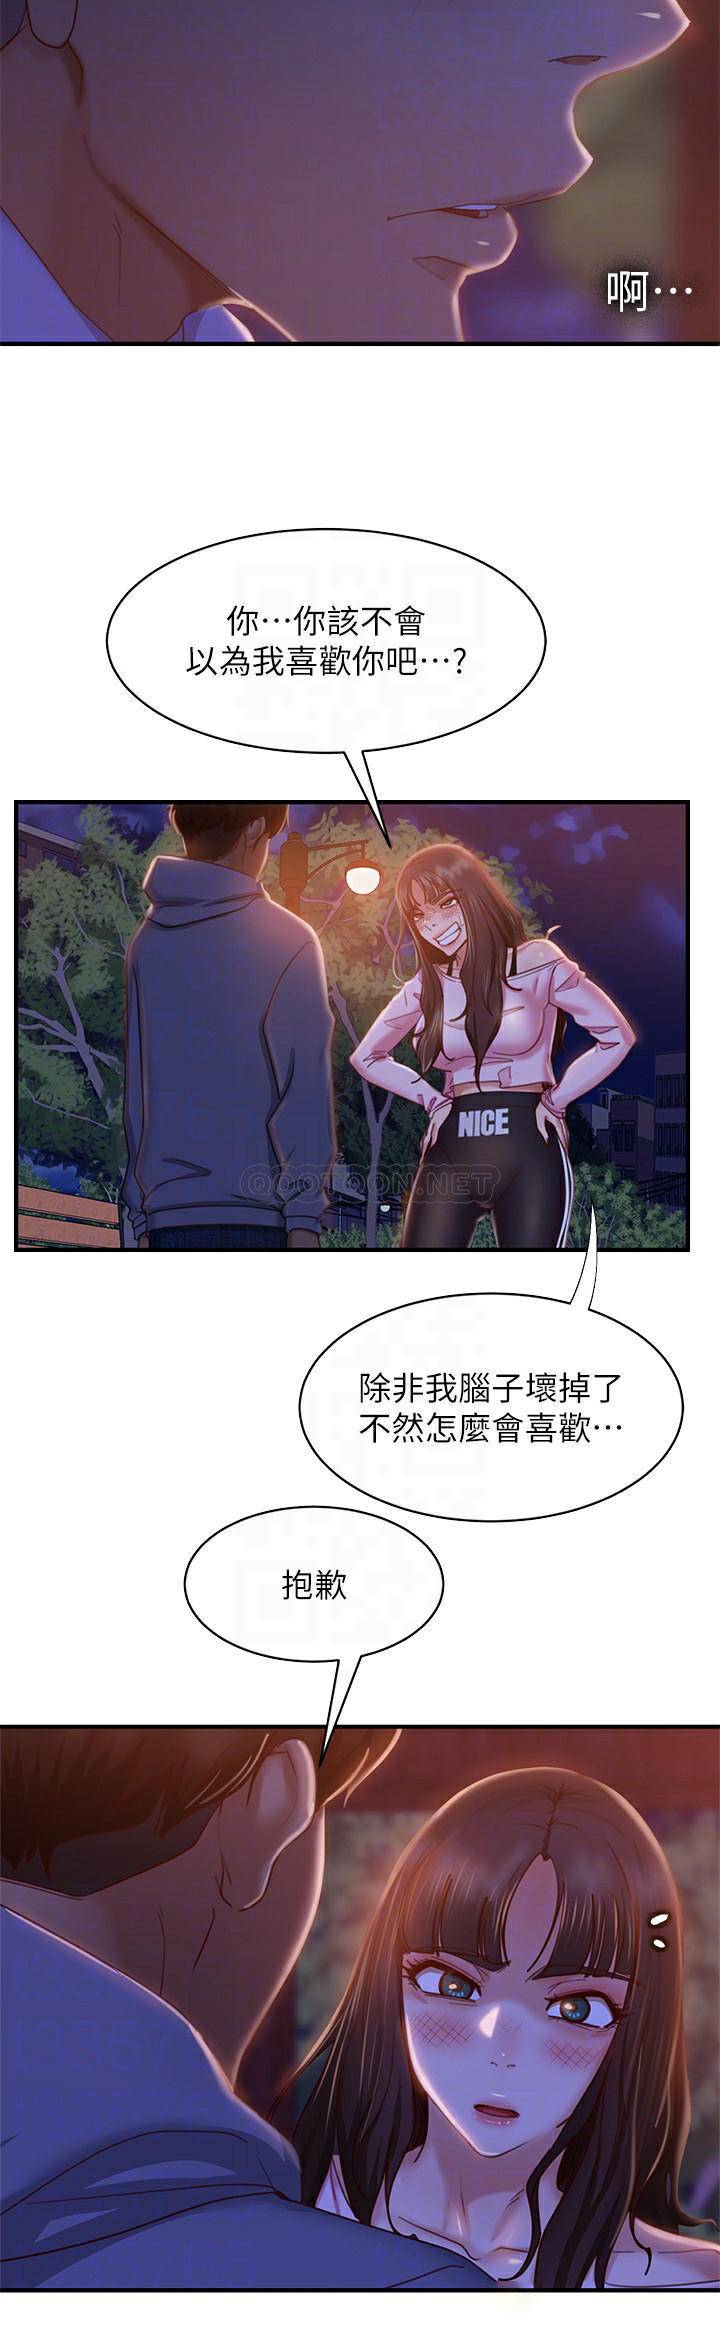 韩国污漫画 不良女房客 第30话尹娜丽你这个变态 6